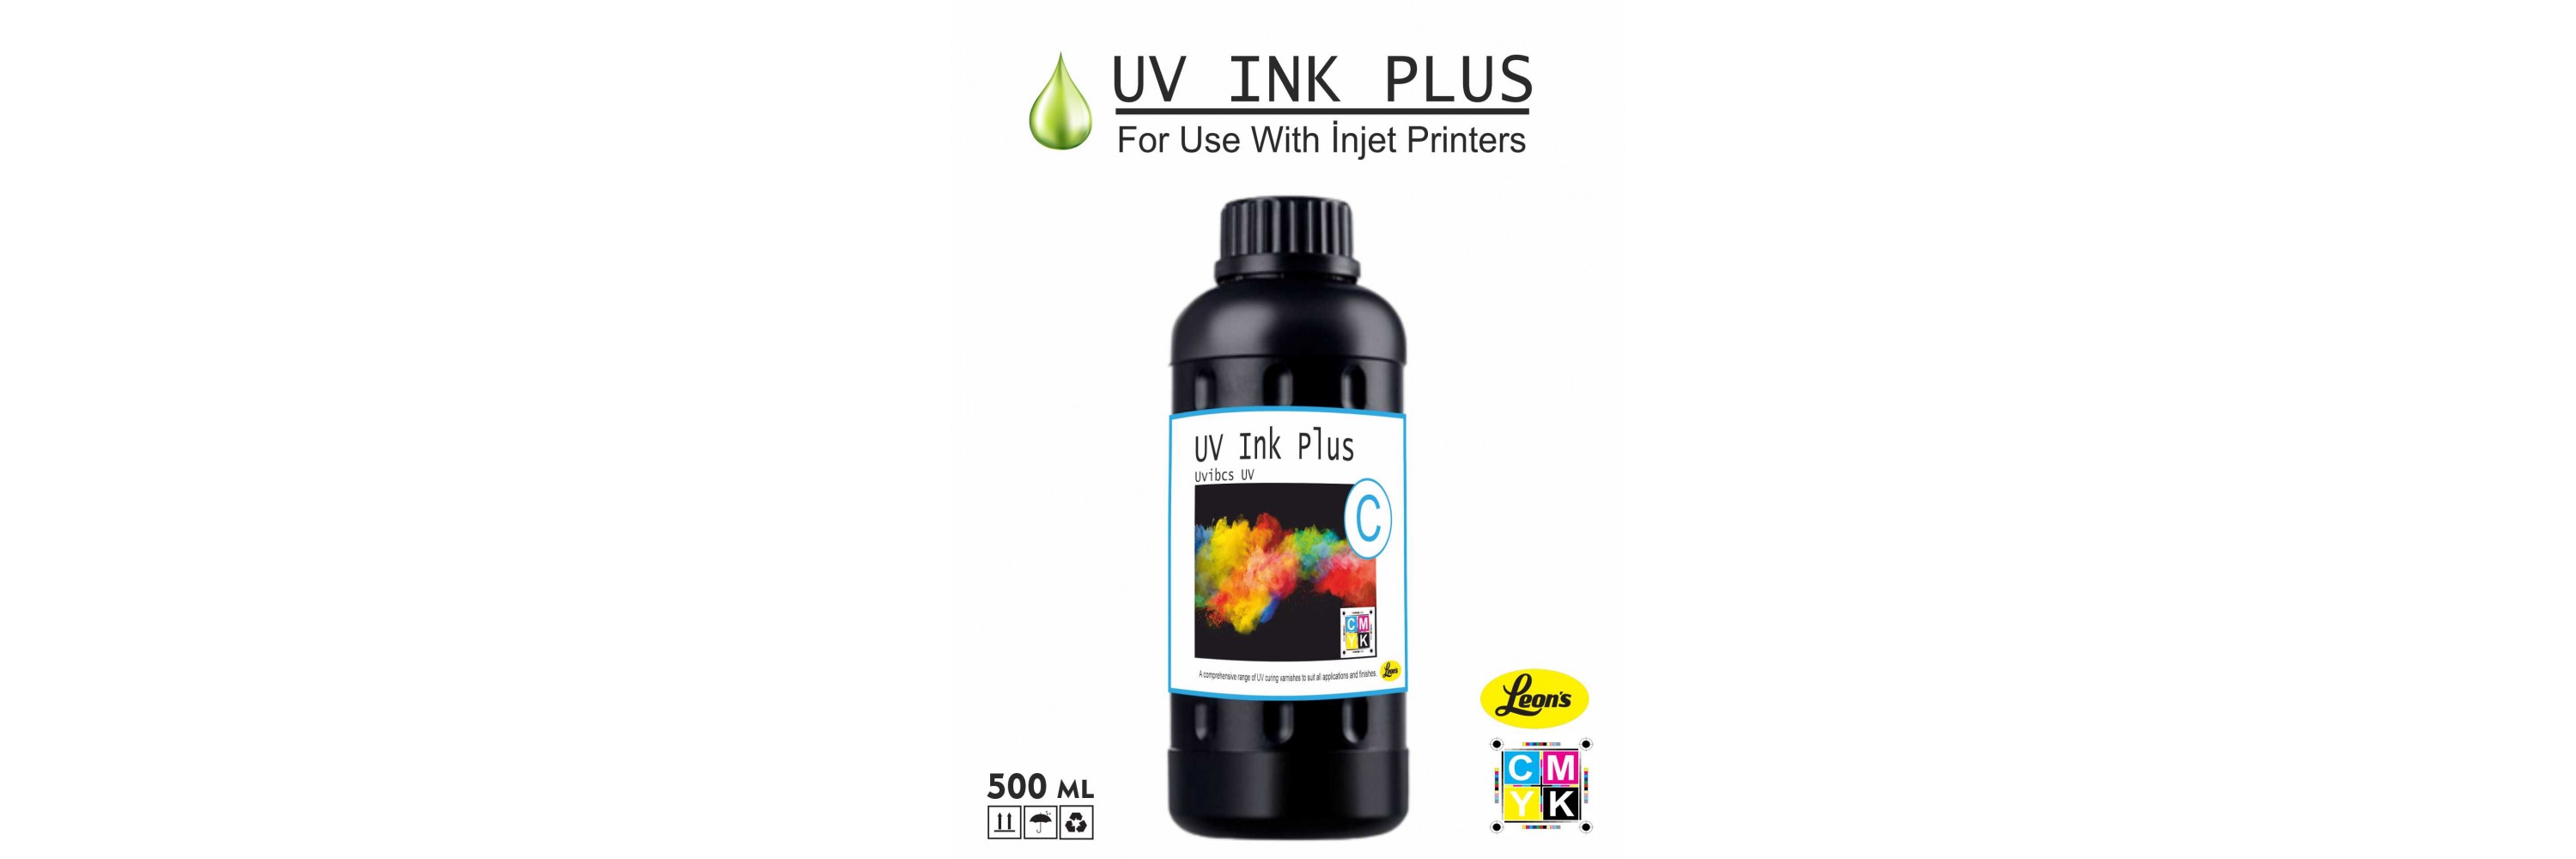 UV INK PLUS (6)